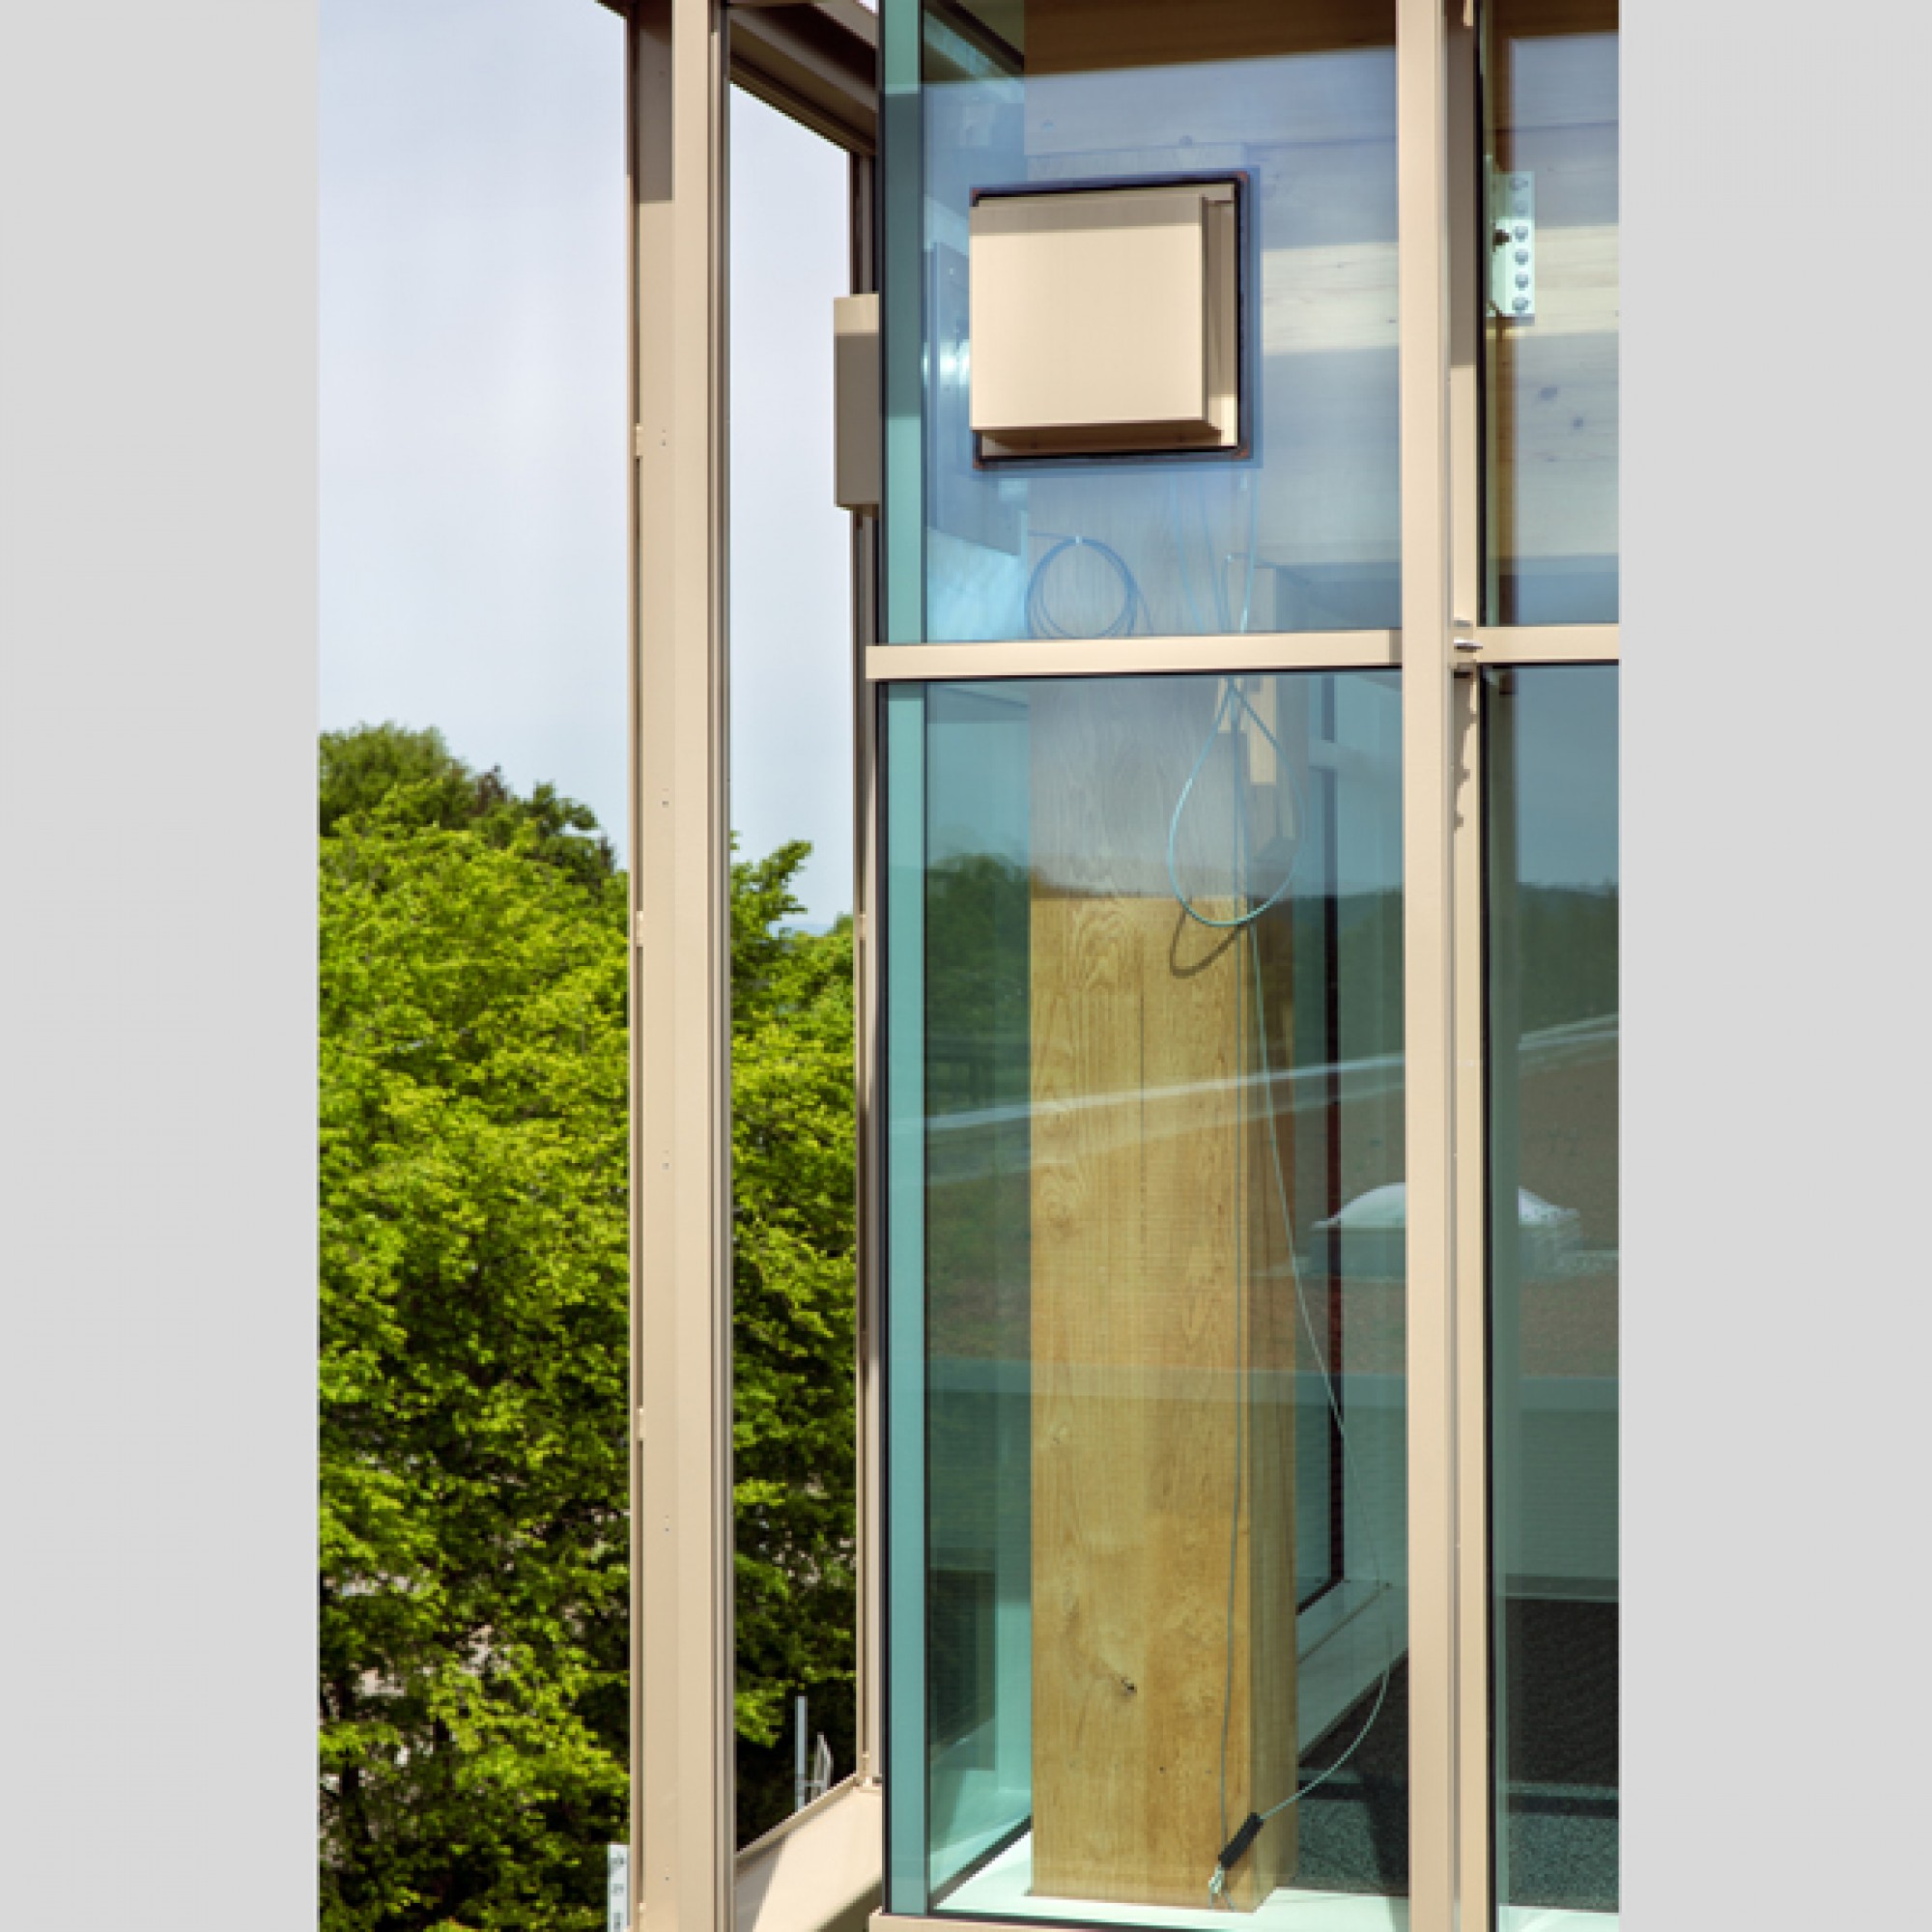 Fassade mit Verankerung der Vorspannkabel. (ETH Zürich/Marco Carocari)